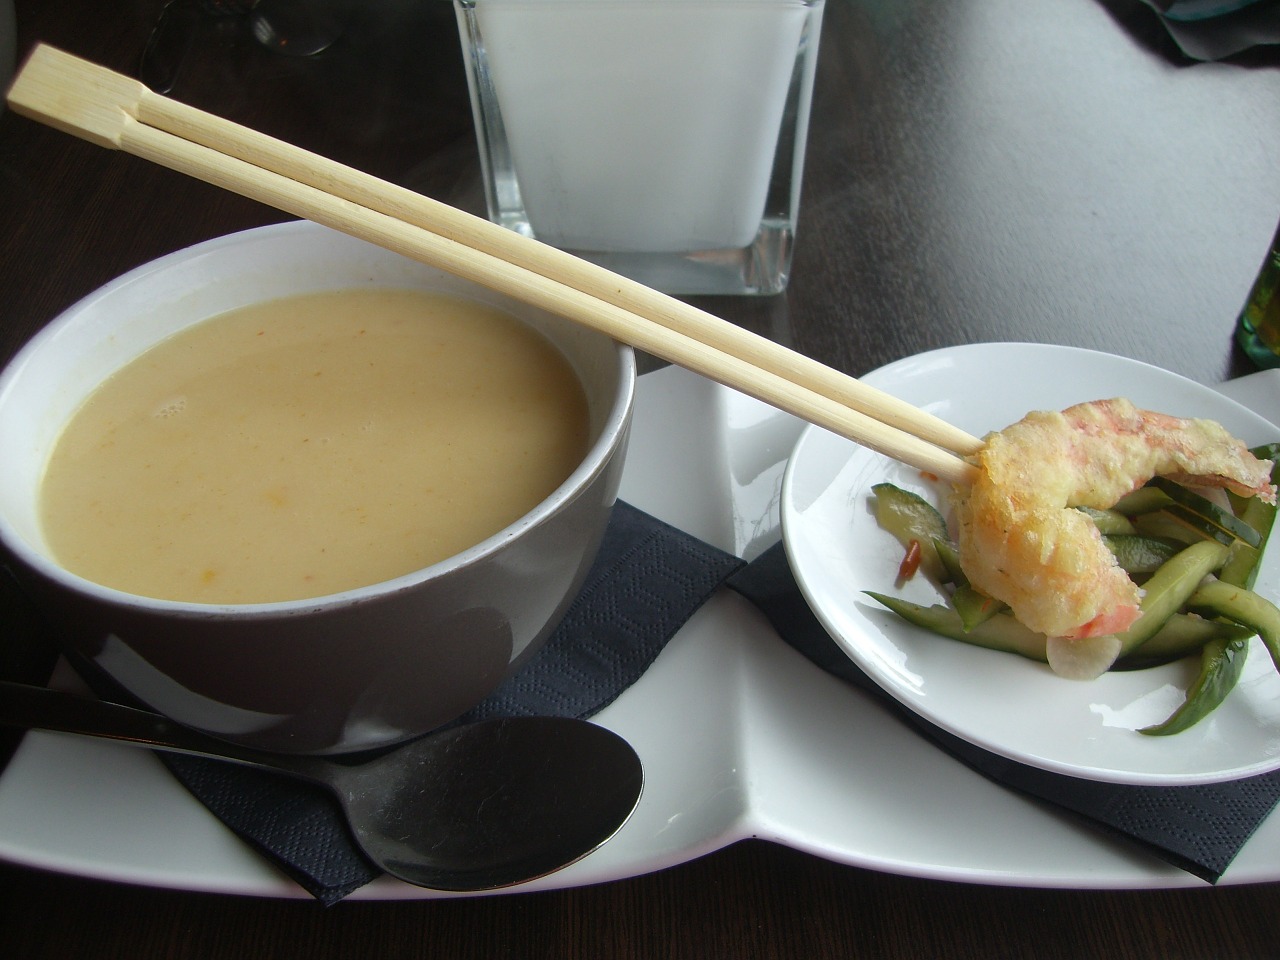 Coconut Shrimp Soup